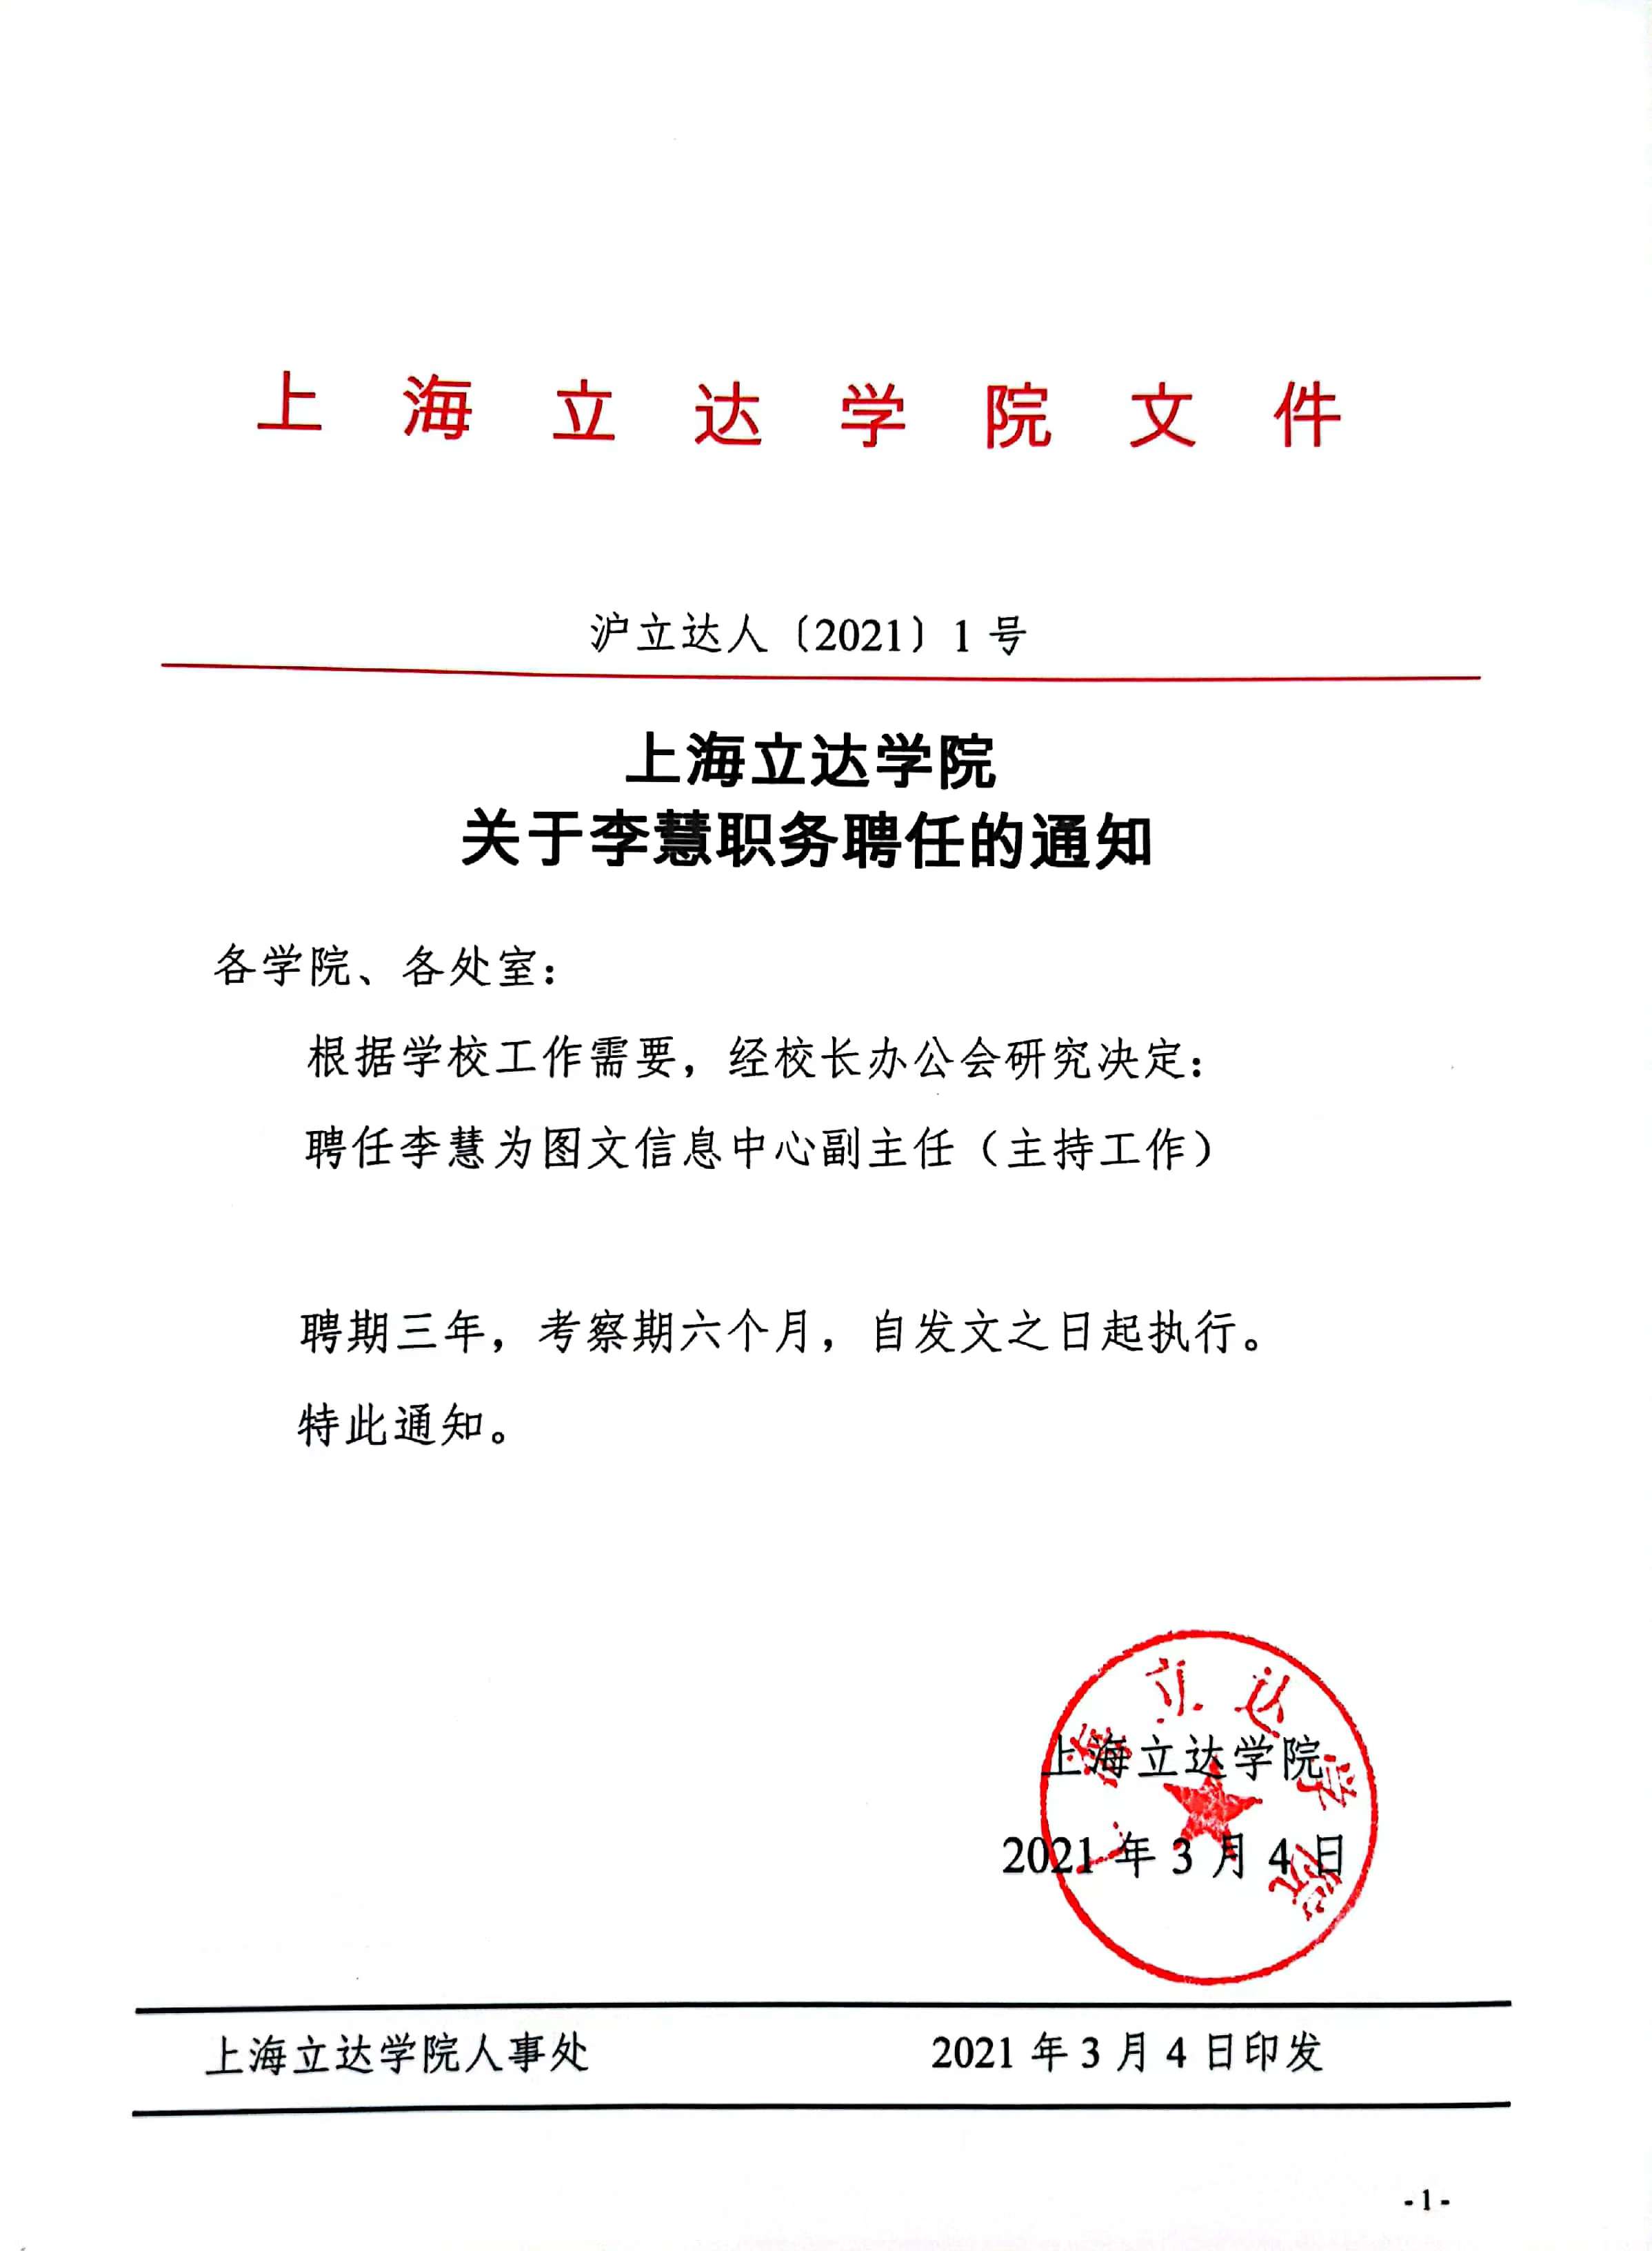 上海立达学院关于李慧职务聘任的通知